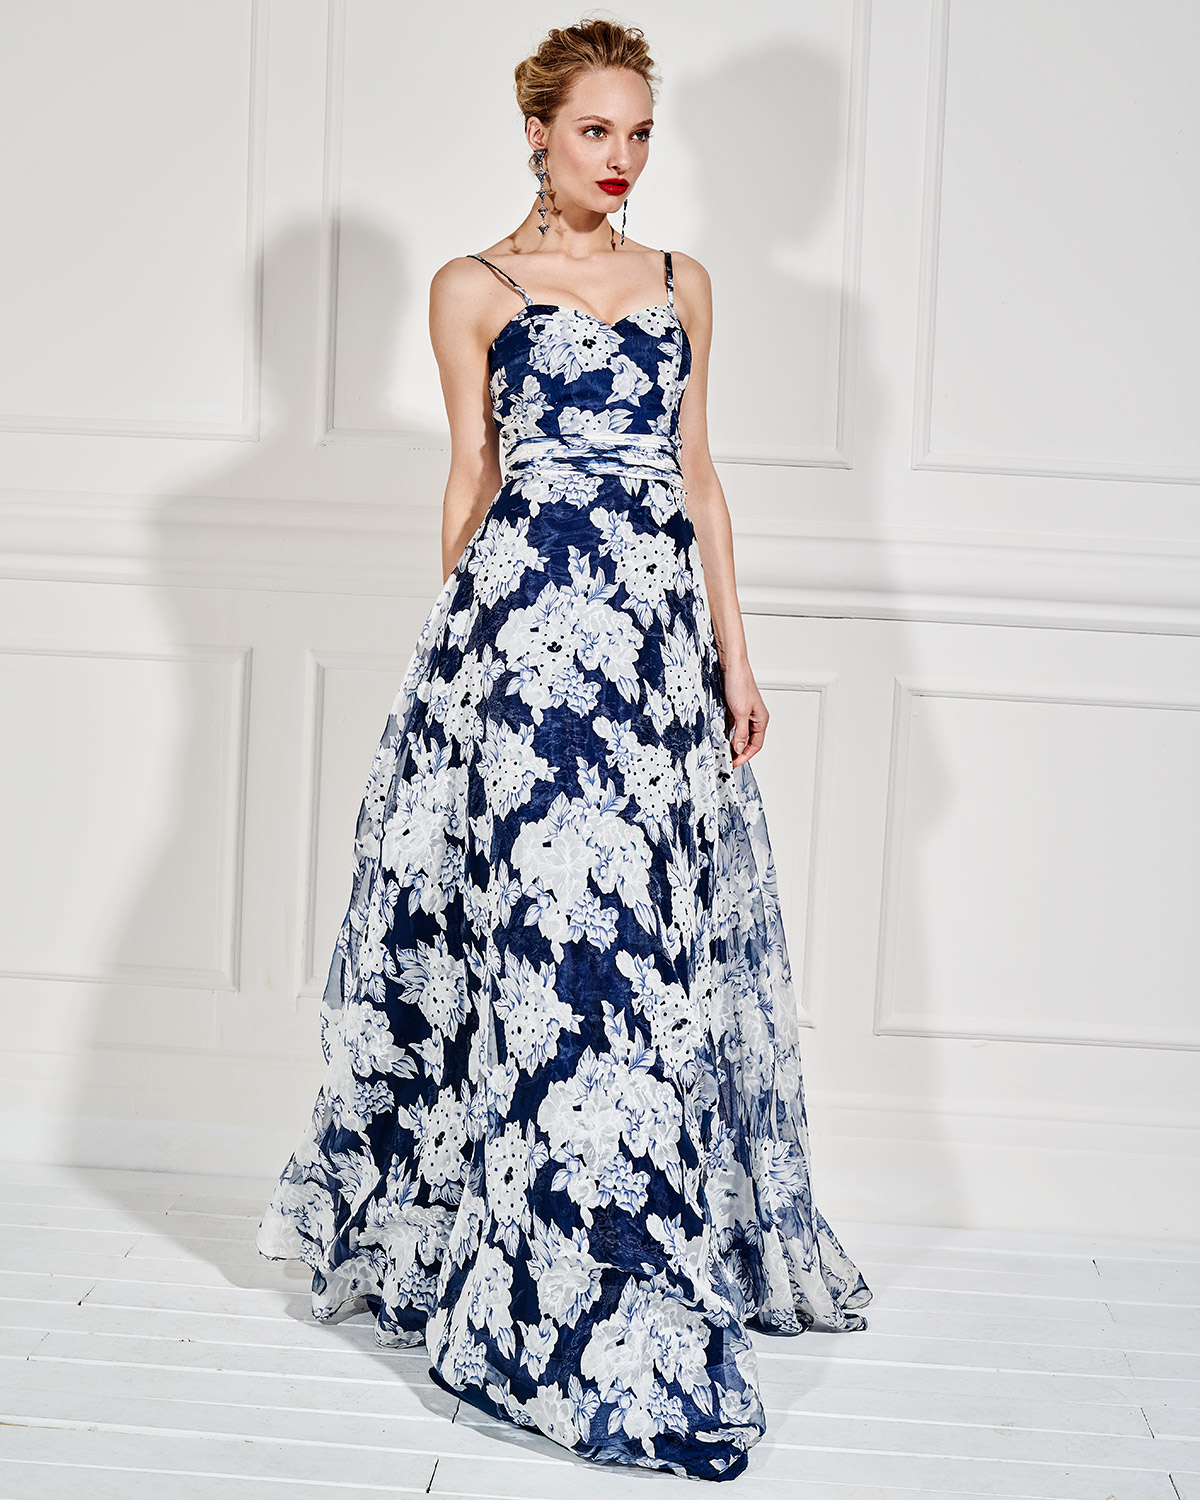 Βραδυνά Φορέματα / Βραδινό μακρύ φόρεμα με φλοράλ μοτίβο